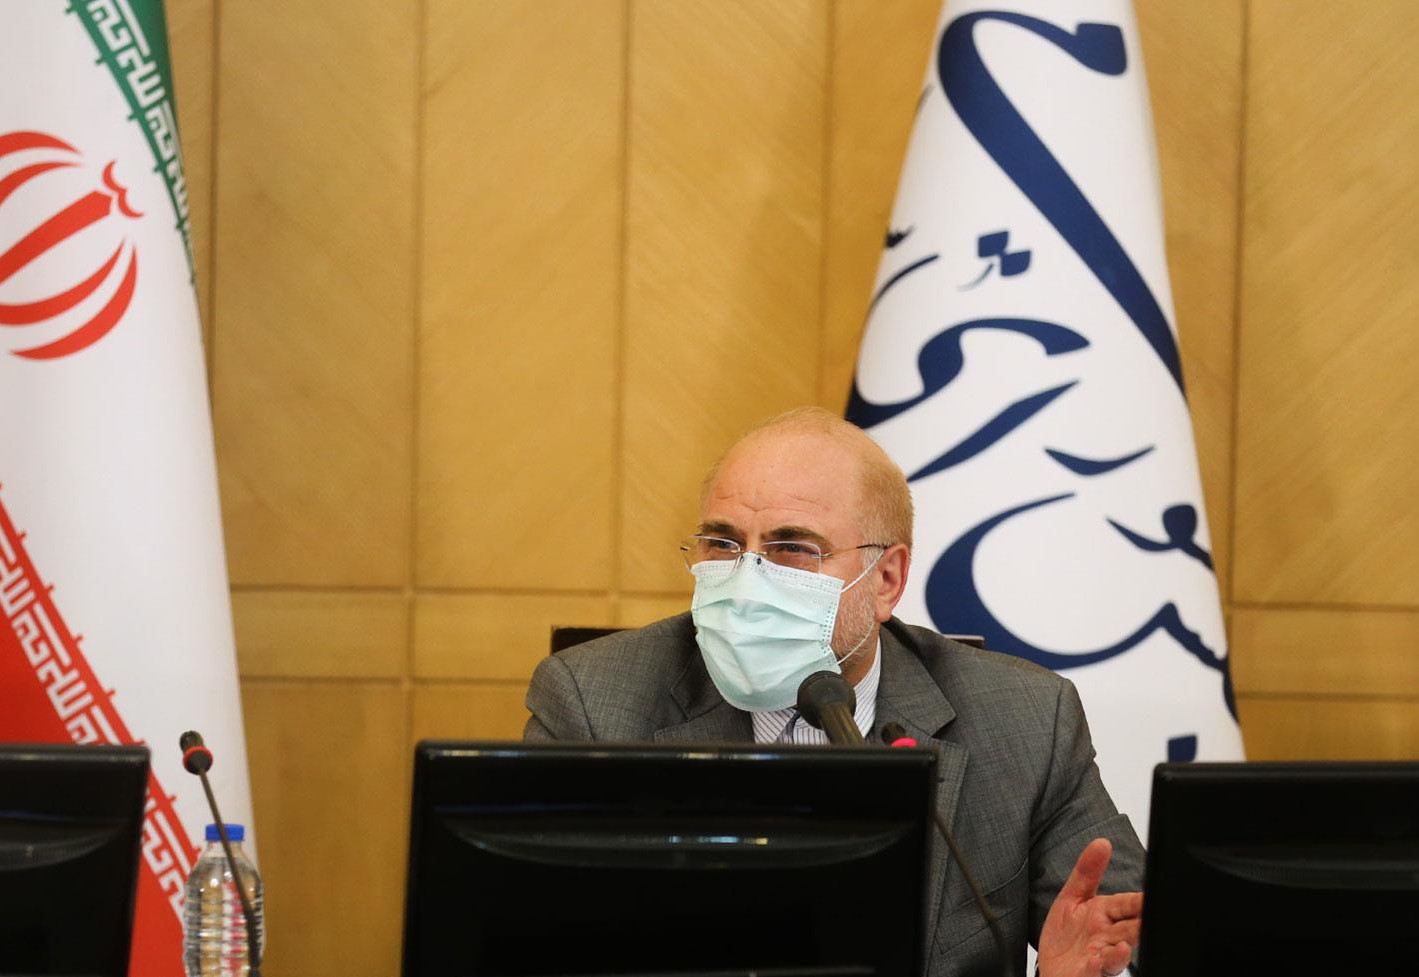 محمدباقر قالیباف، رییس مجلس شورای اسلامی در نخستین جلسه بررسی طرح صیانت از فضای مجازی در کمیسیون مشترک